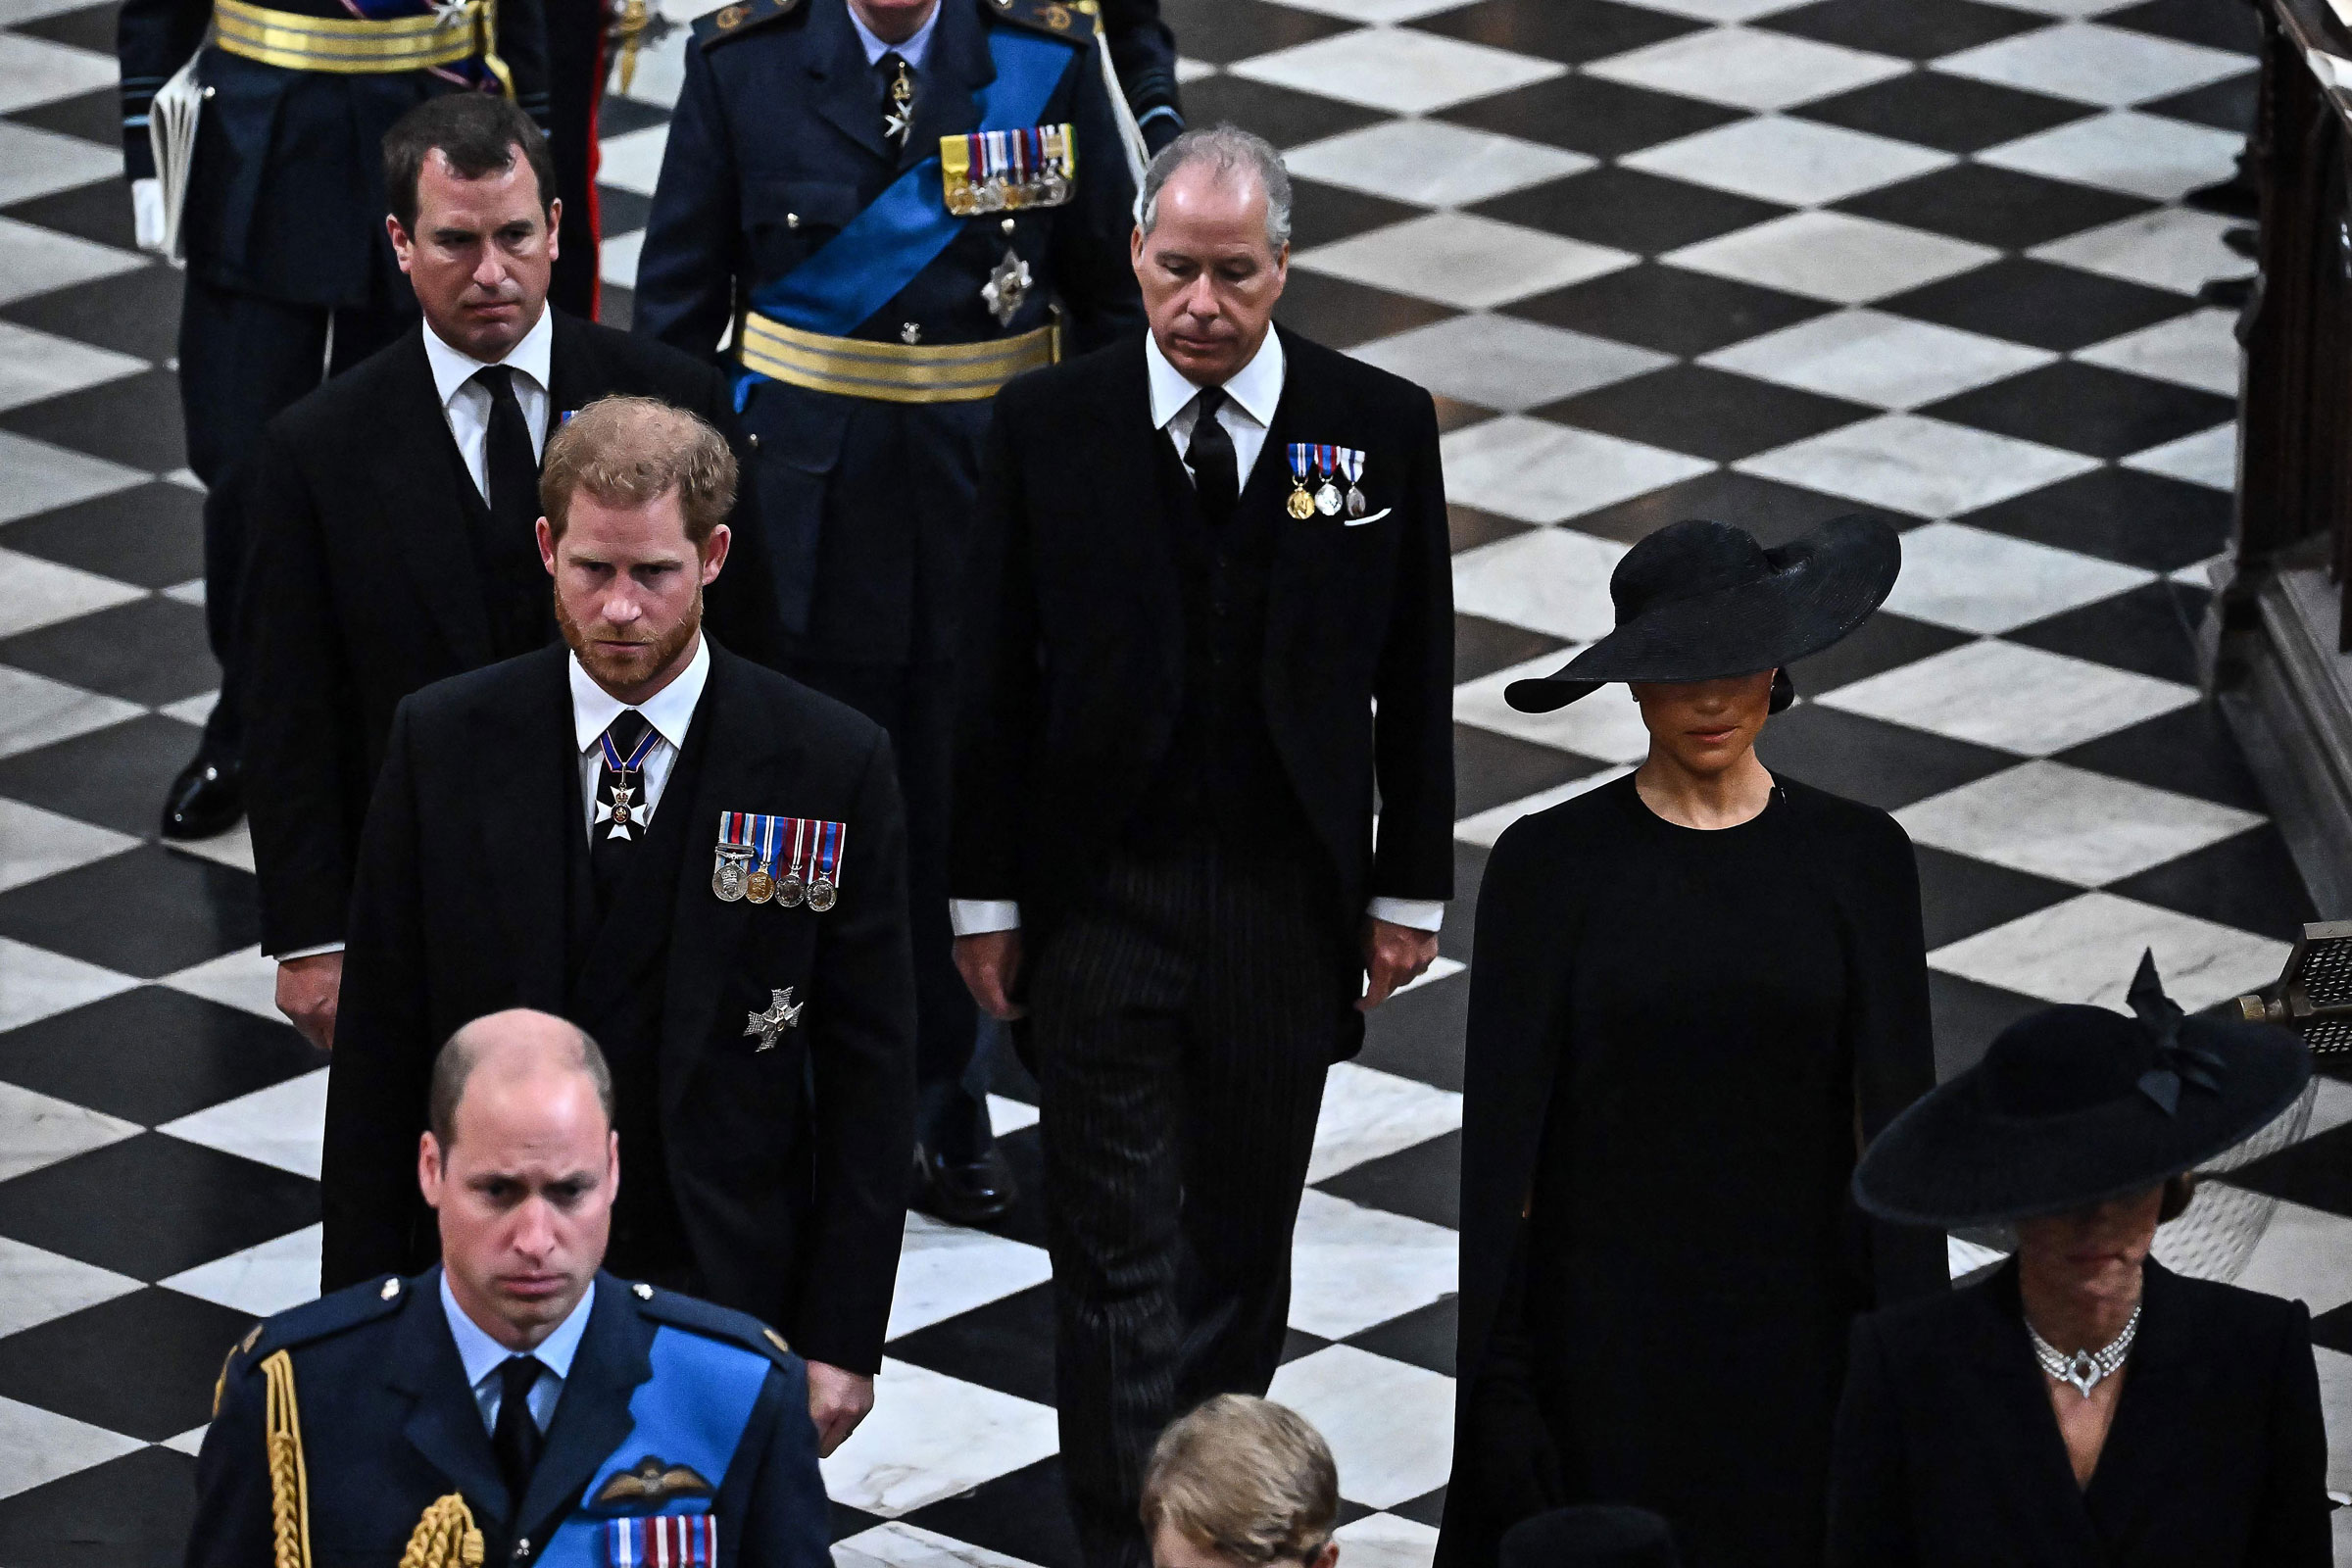 Peter Phillips (solda), Britanya Prensi Harry, Sussex Dükü (ortada solda), Britanya Prensi William, Galler Prensi (sol altta), Britanya'nın Snowdon Kontu (İ) ve Britanya'nın Sussex Düşesi Meghan, Sussex Düşesi (sağda) Manastırdan ayrılıyor İngiltere Kraliçesi II. Elizabeth için 19 Eylül 2022'de Londra'daki Westminster Abbey'deki Devlet Cenaze Hizmetinde. (Ben Stansall—Havuz/AFP/Getty Images)